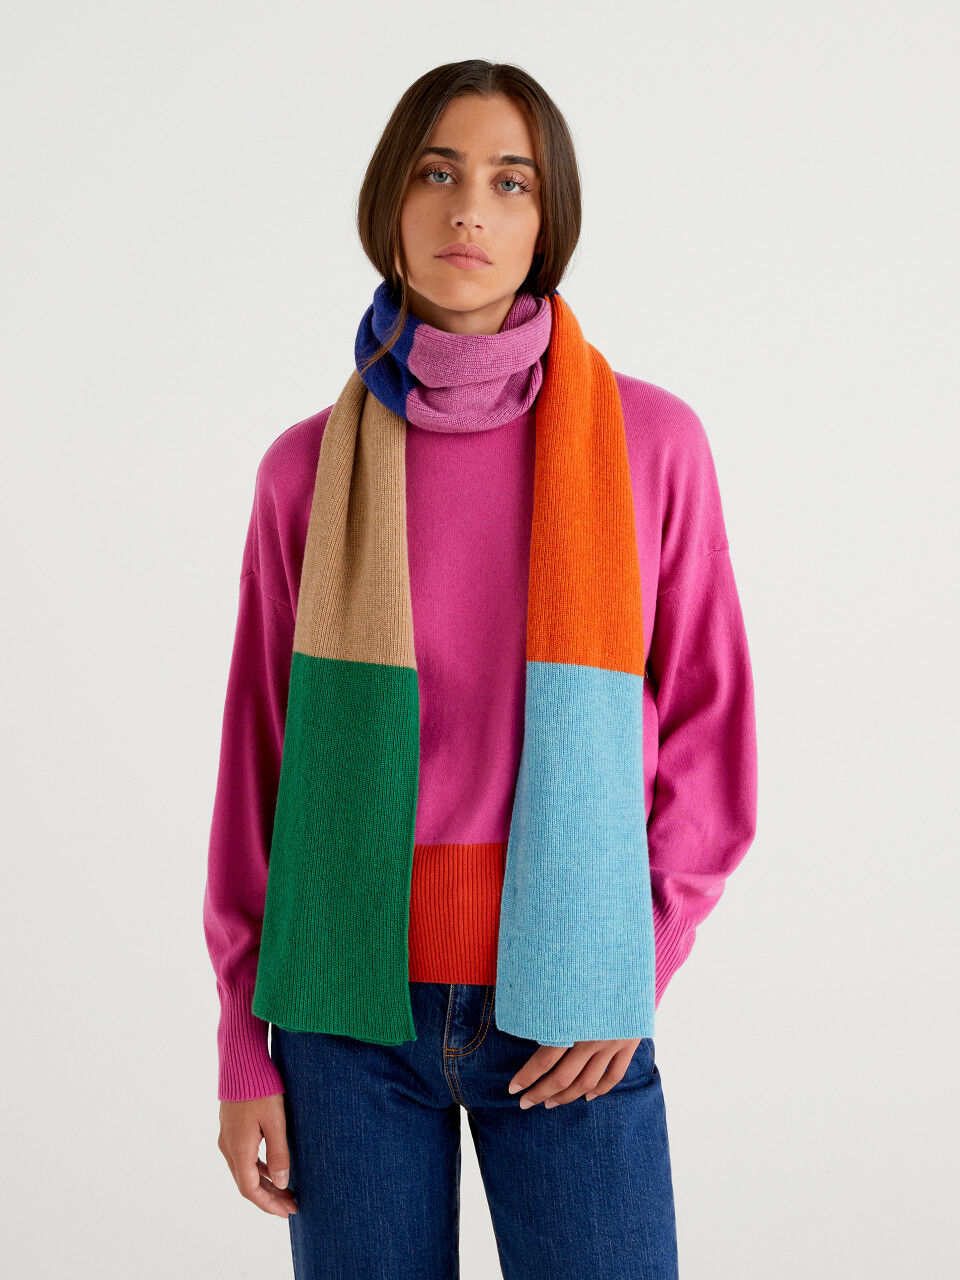 Maxi multicolored scarf in pure Merino wool